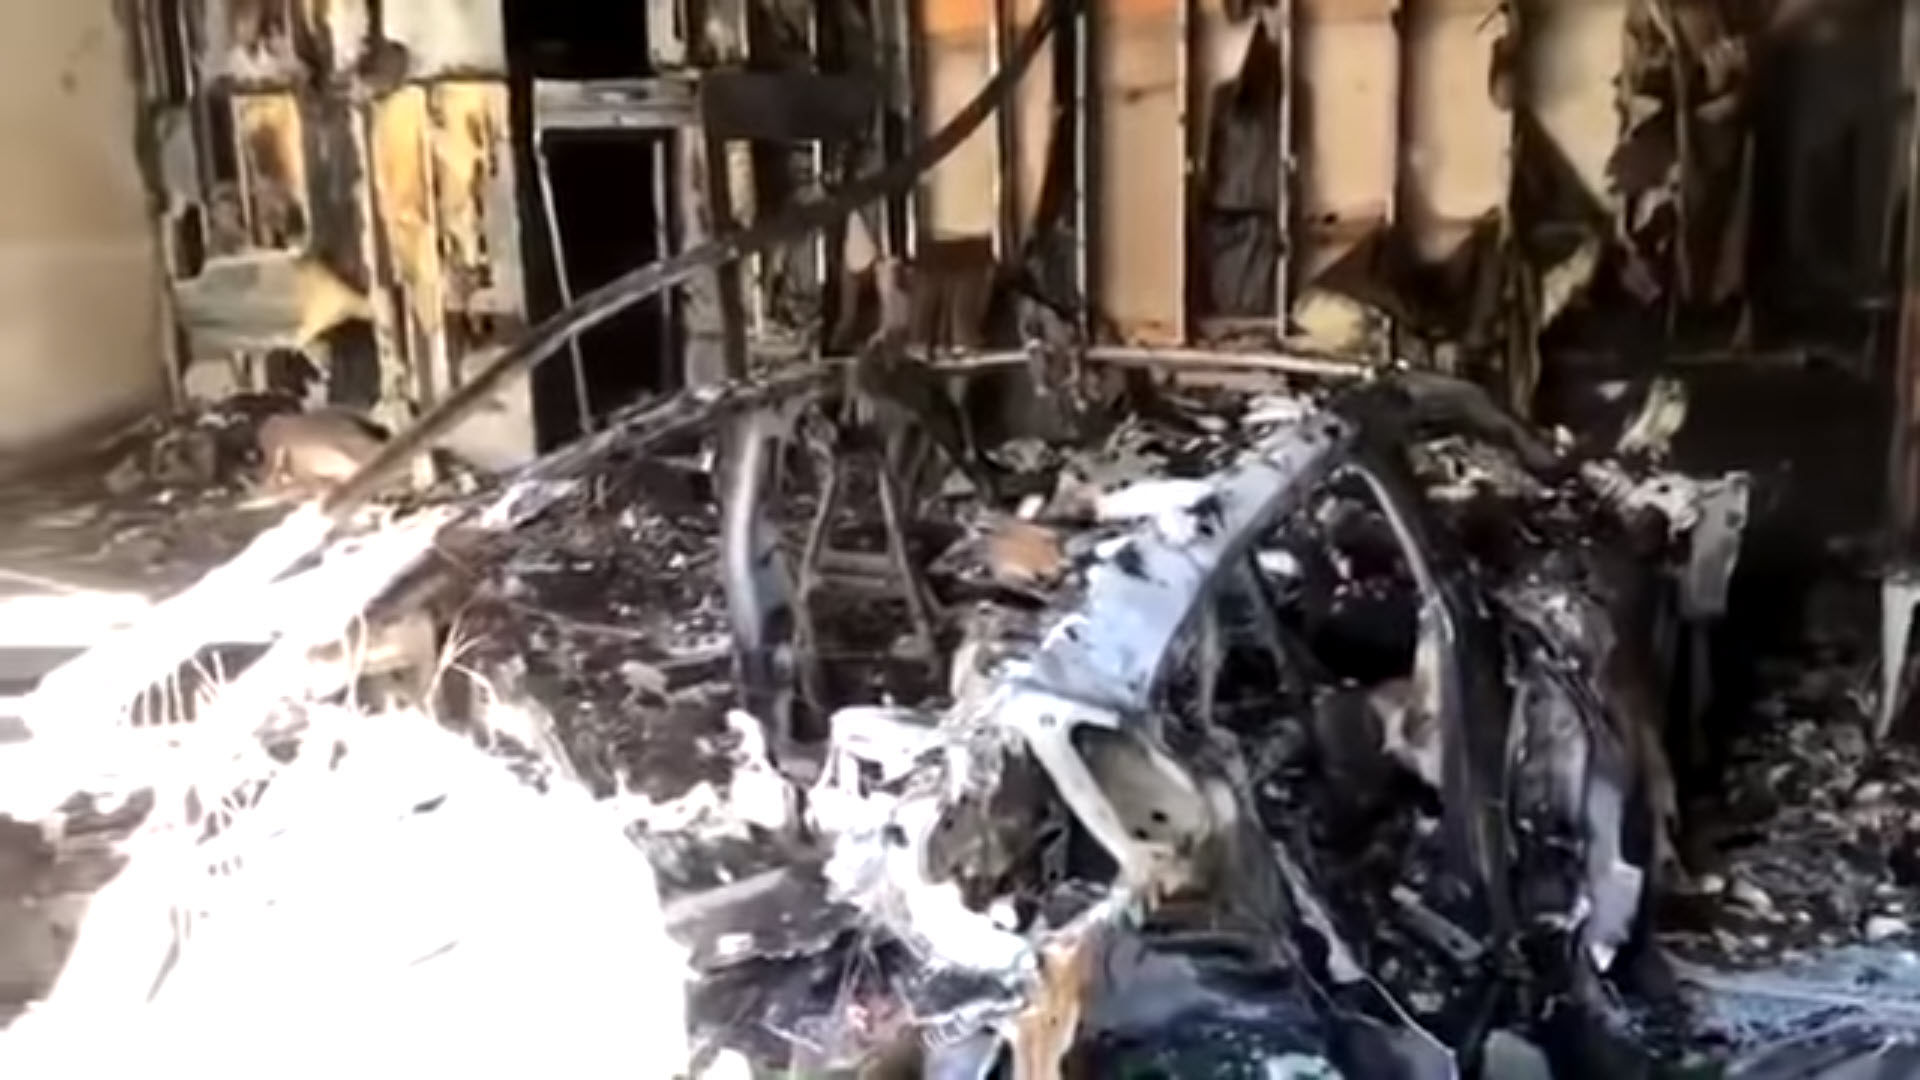 Porsche Taycan Catches Fire, Burns Down Garage in Florida